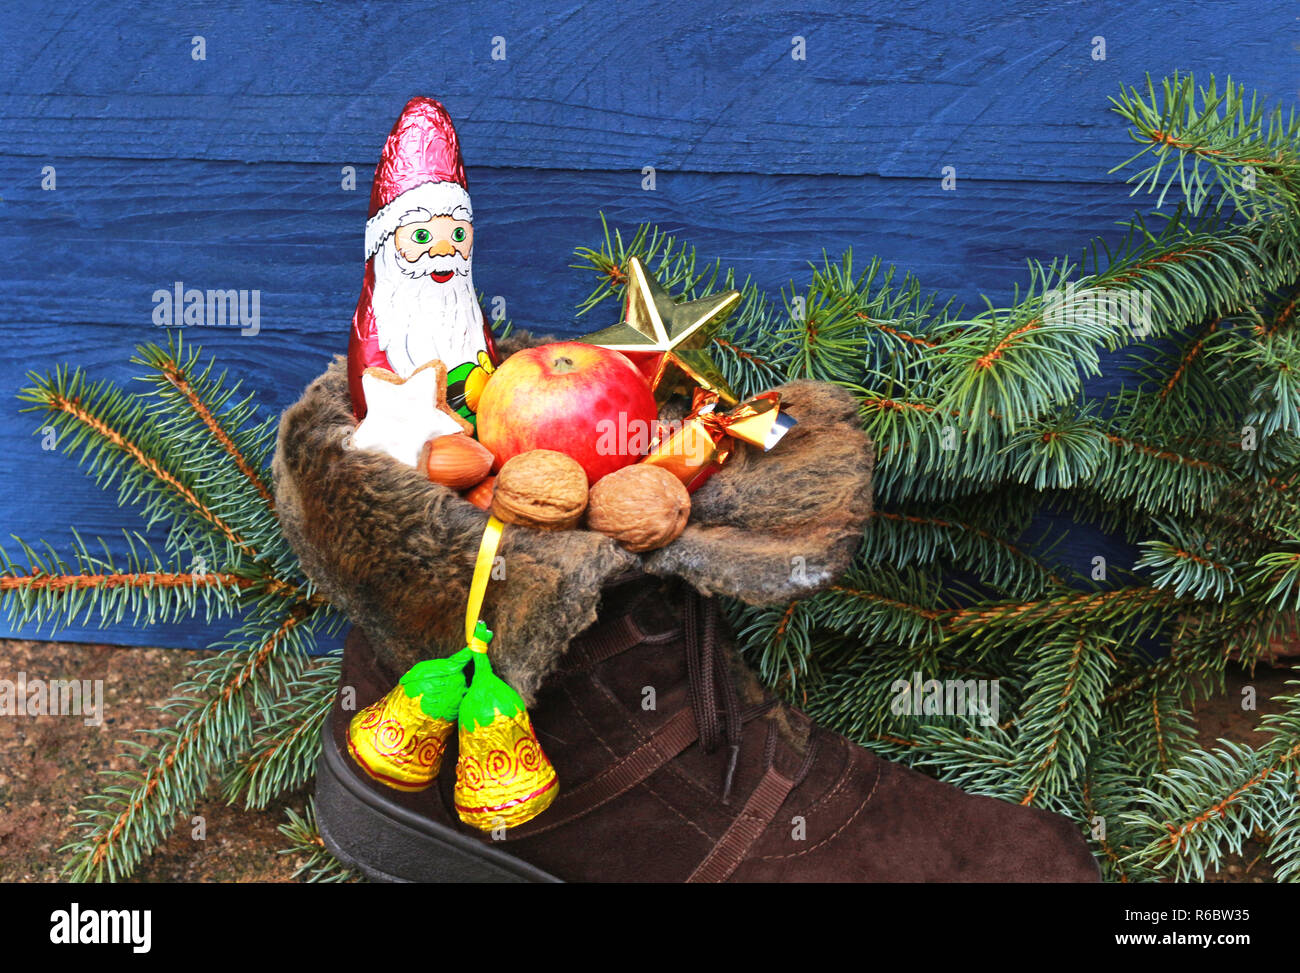 Weihnachtsstrumpf mit Schokolade Santa und Muttern vor Niederlassungen und einem blauen Hintergrund holz fichte Stockfoto